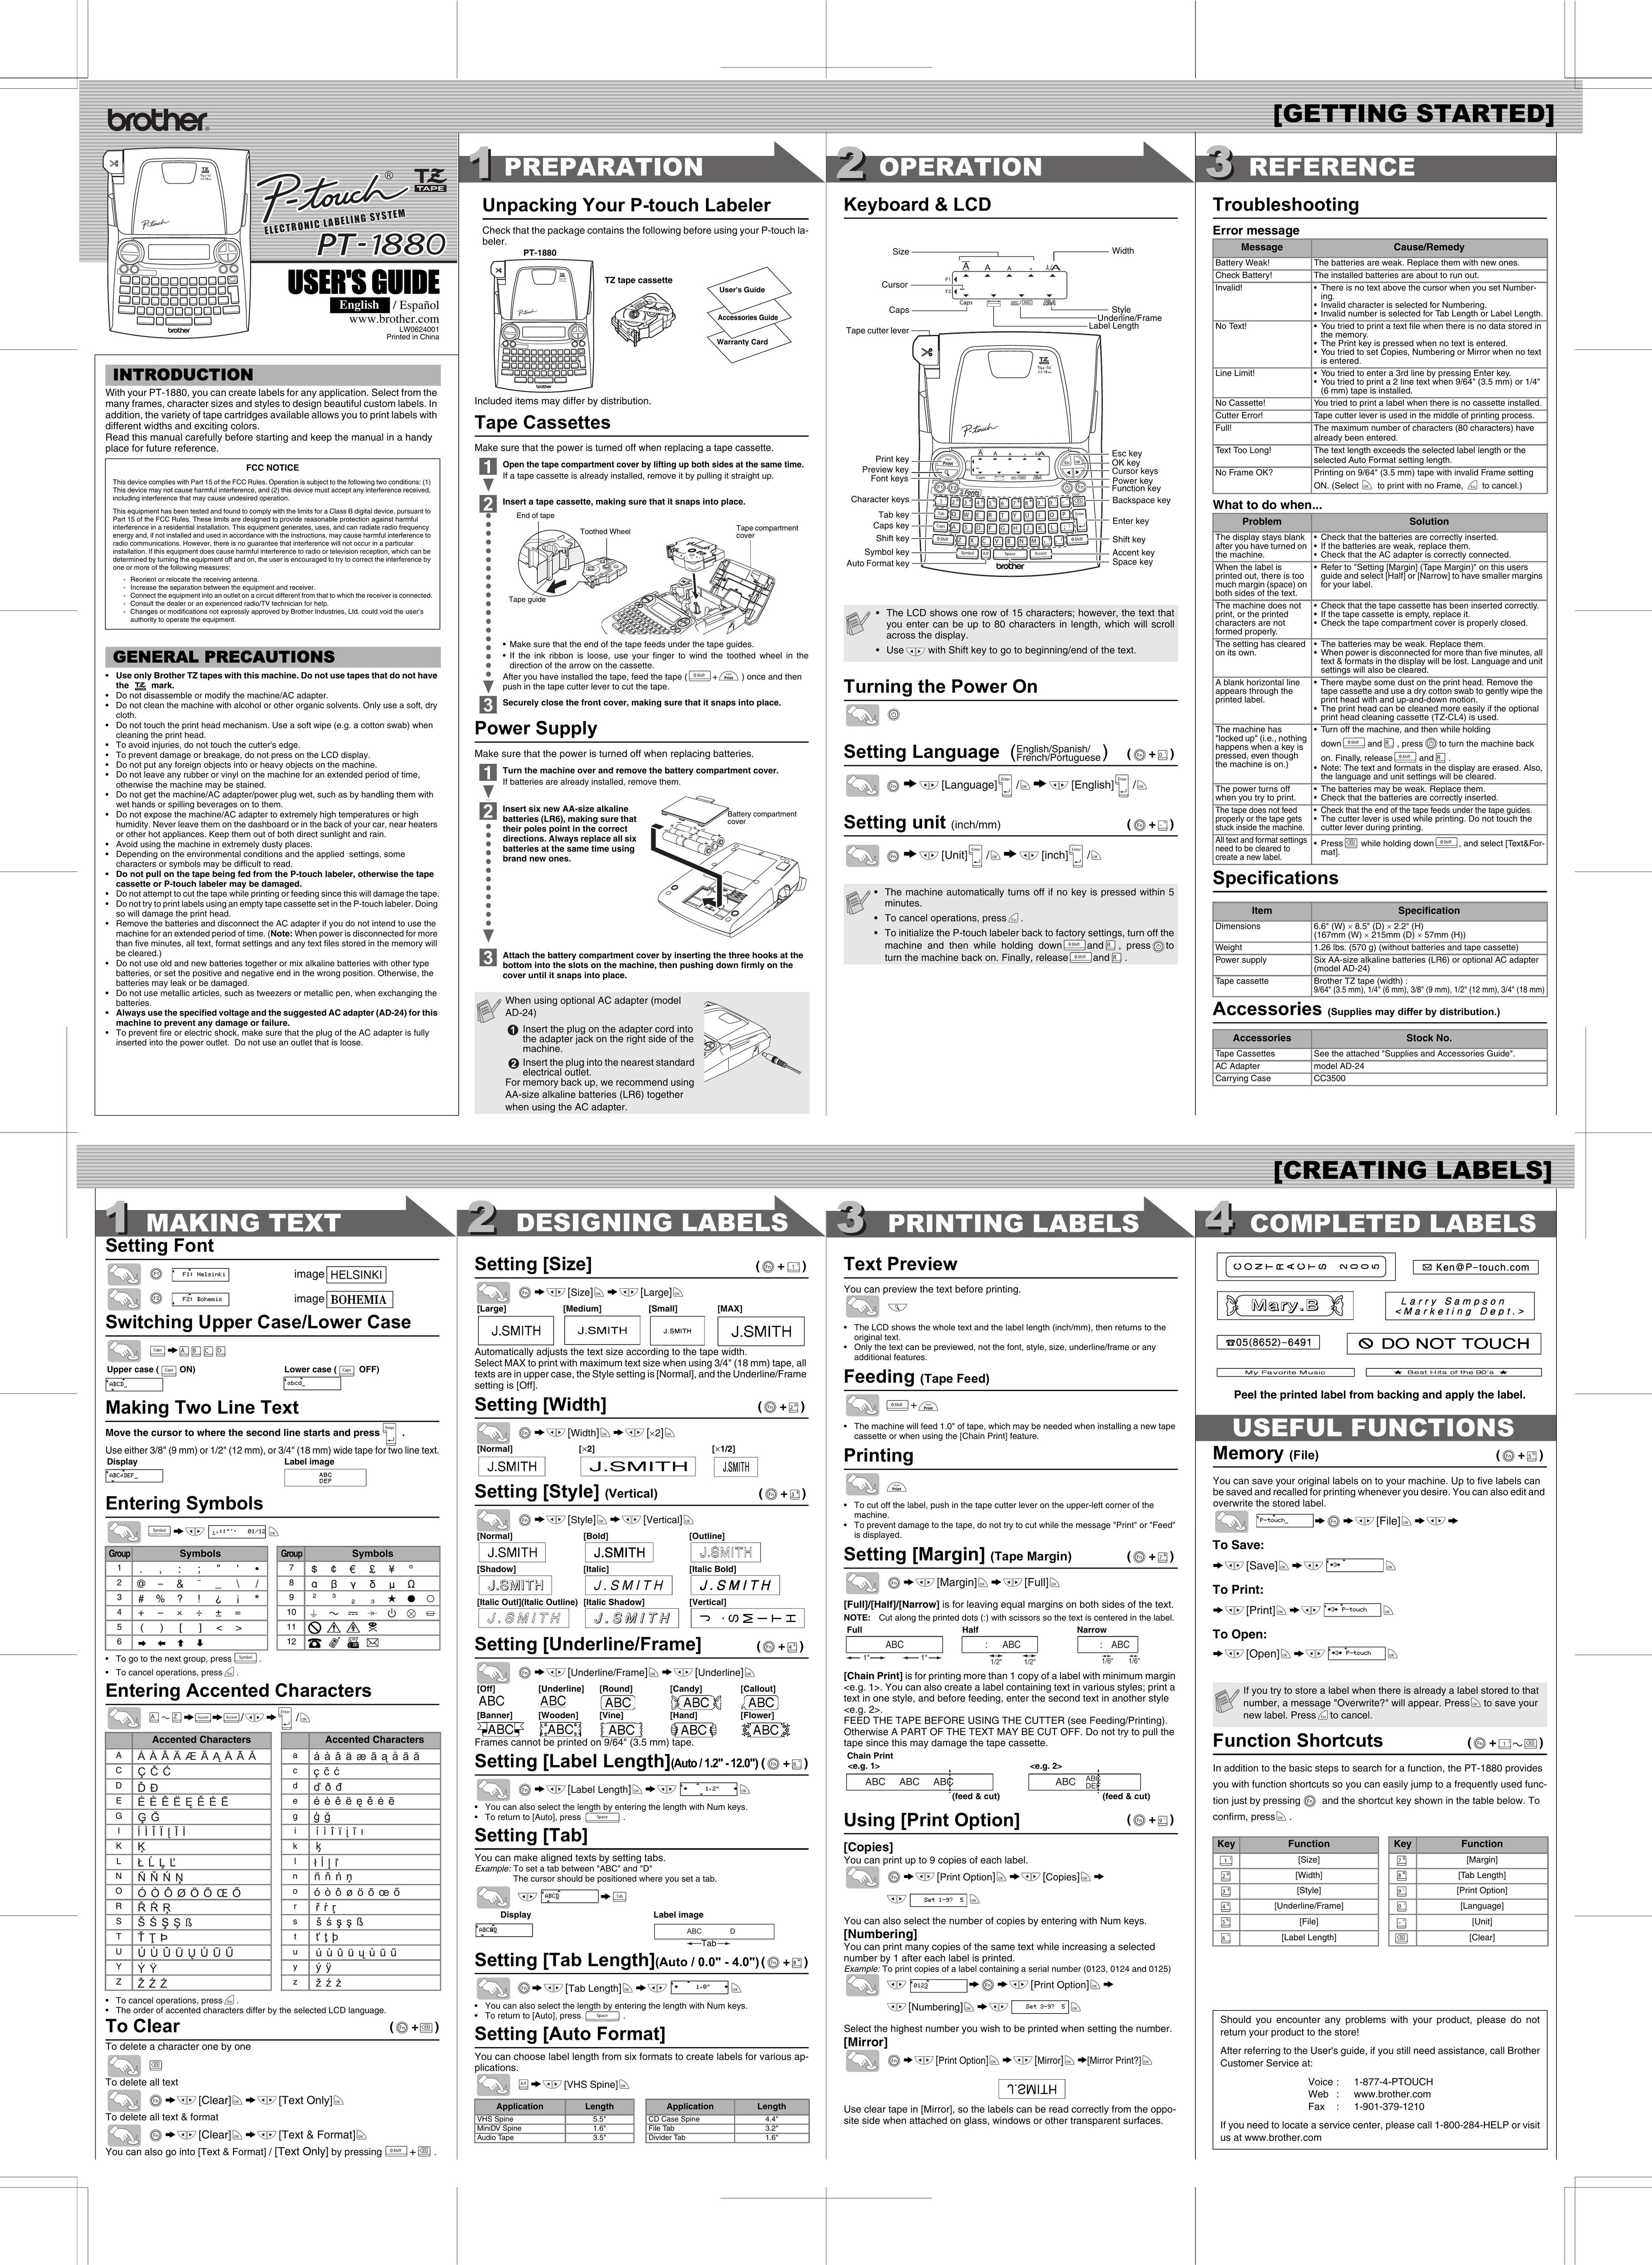 Brother PT-1880 Label Maker User Manual